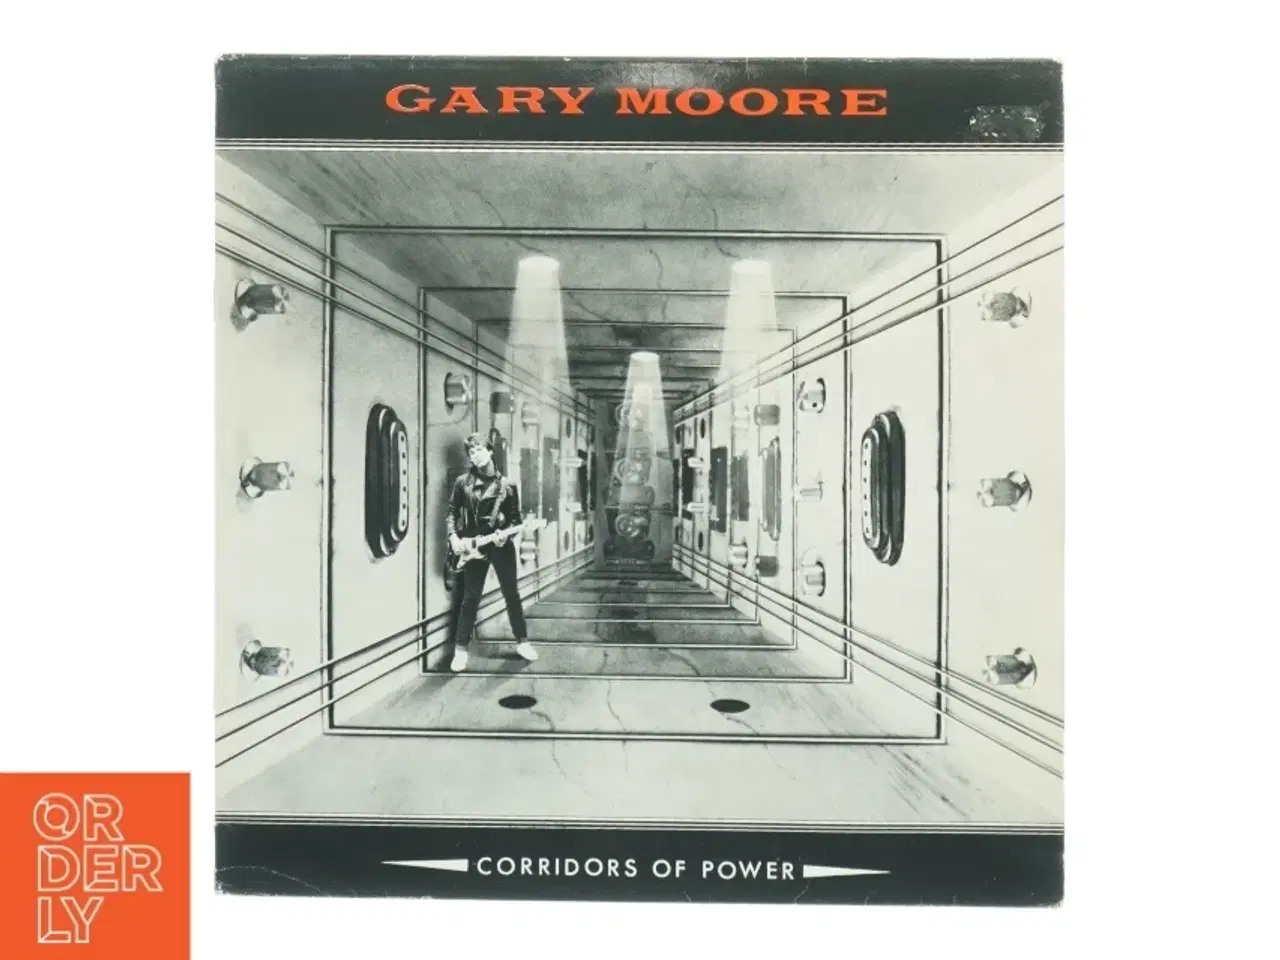 Billede 1 - Gary Moore - Corridors of Power LP fra Virgin Records (str. 31 x 31 cm)